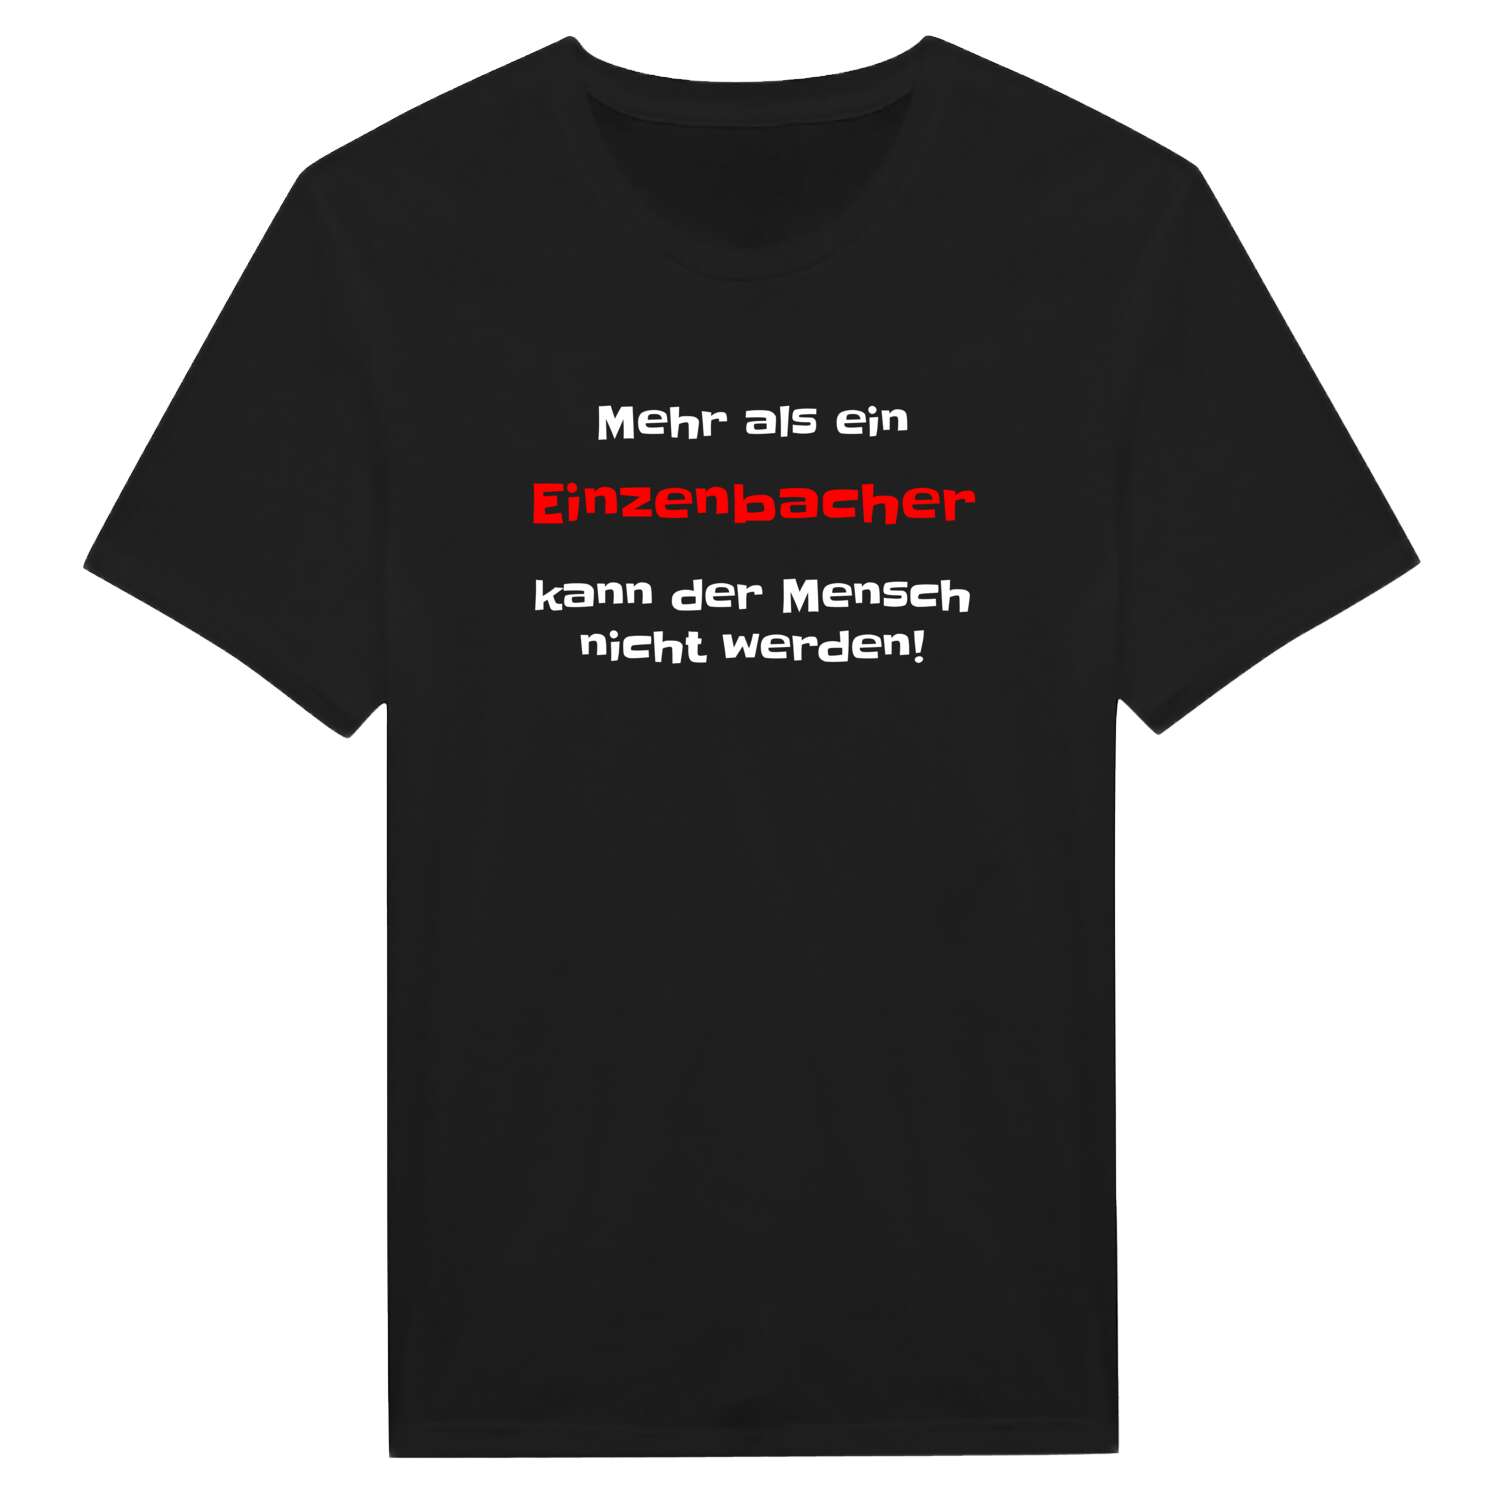 Einzenbach T-Shirt »Mehr als ein«